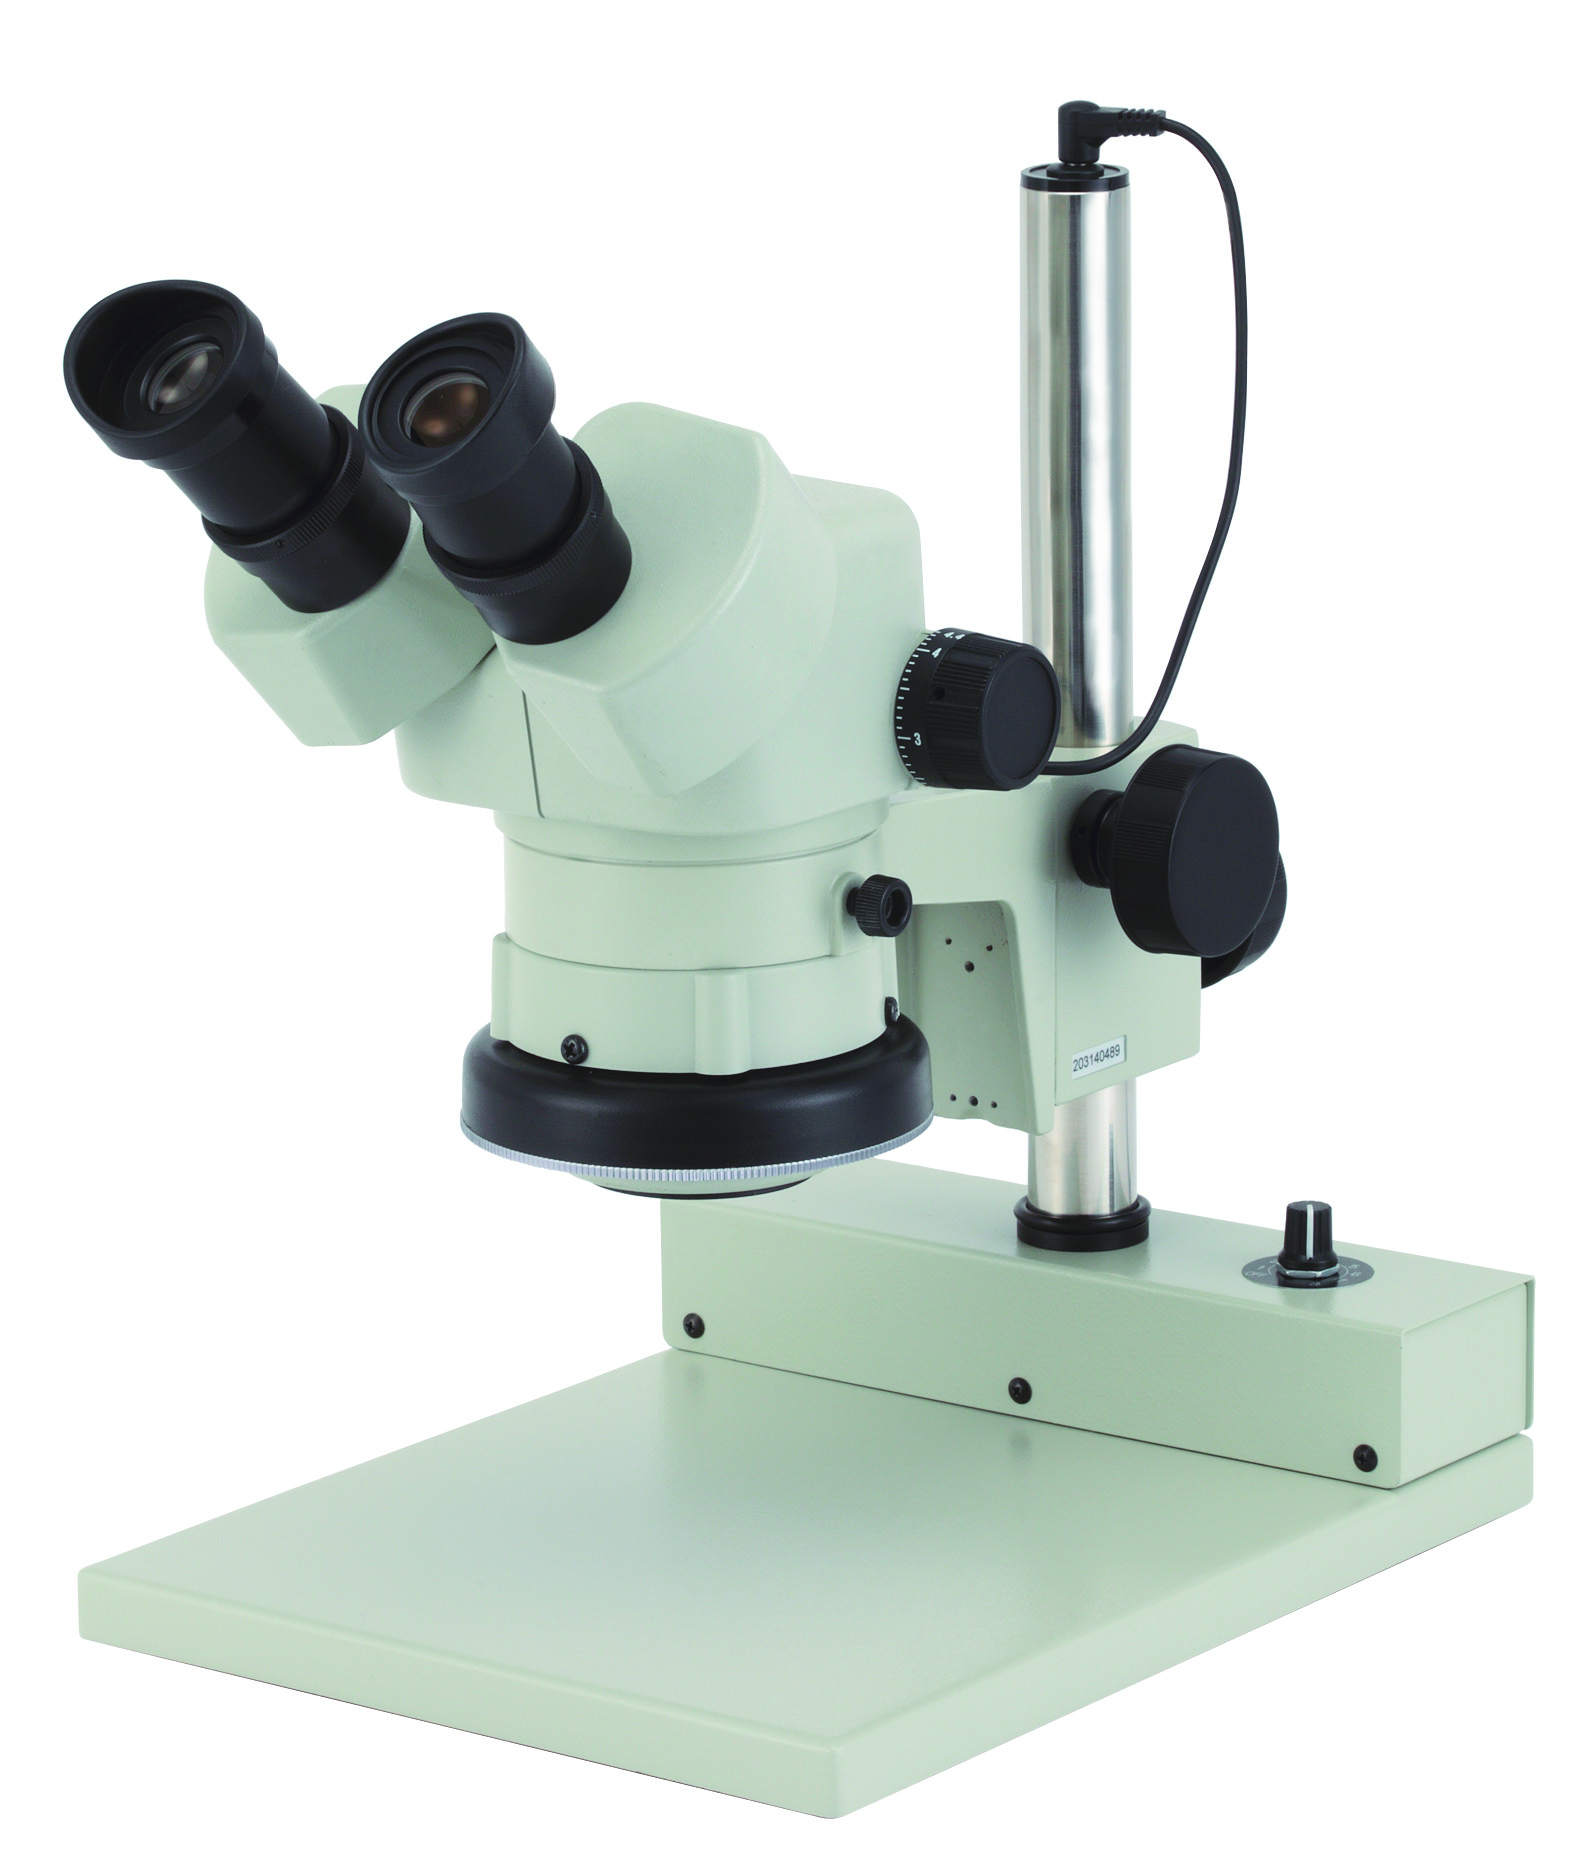 カートン光学 ズームシステム実体顕微鏡 LED落射調光照明